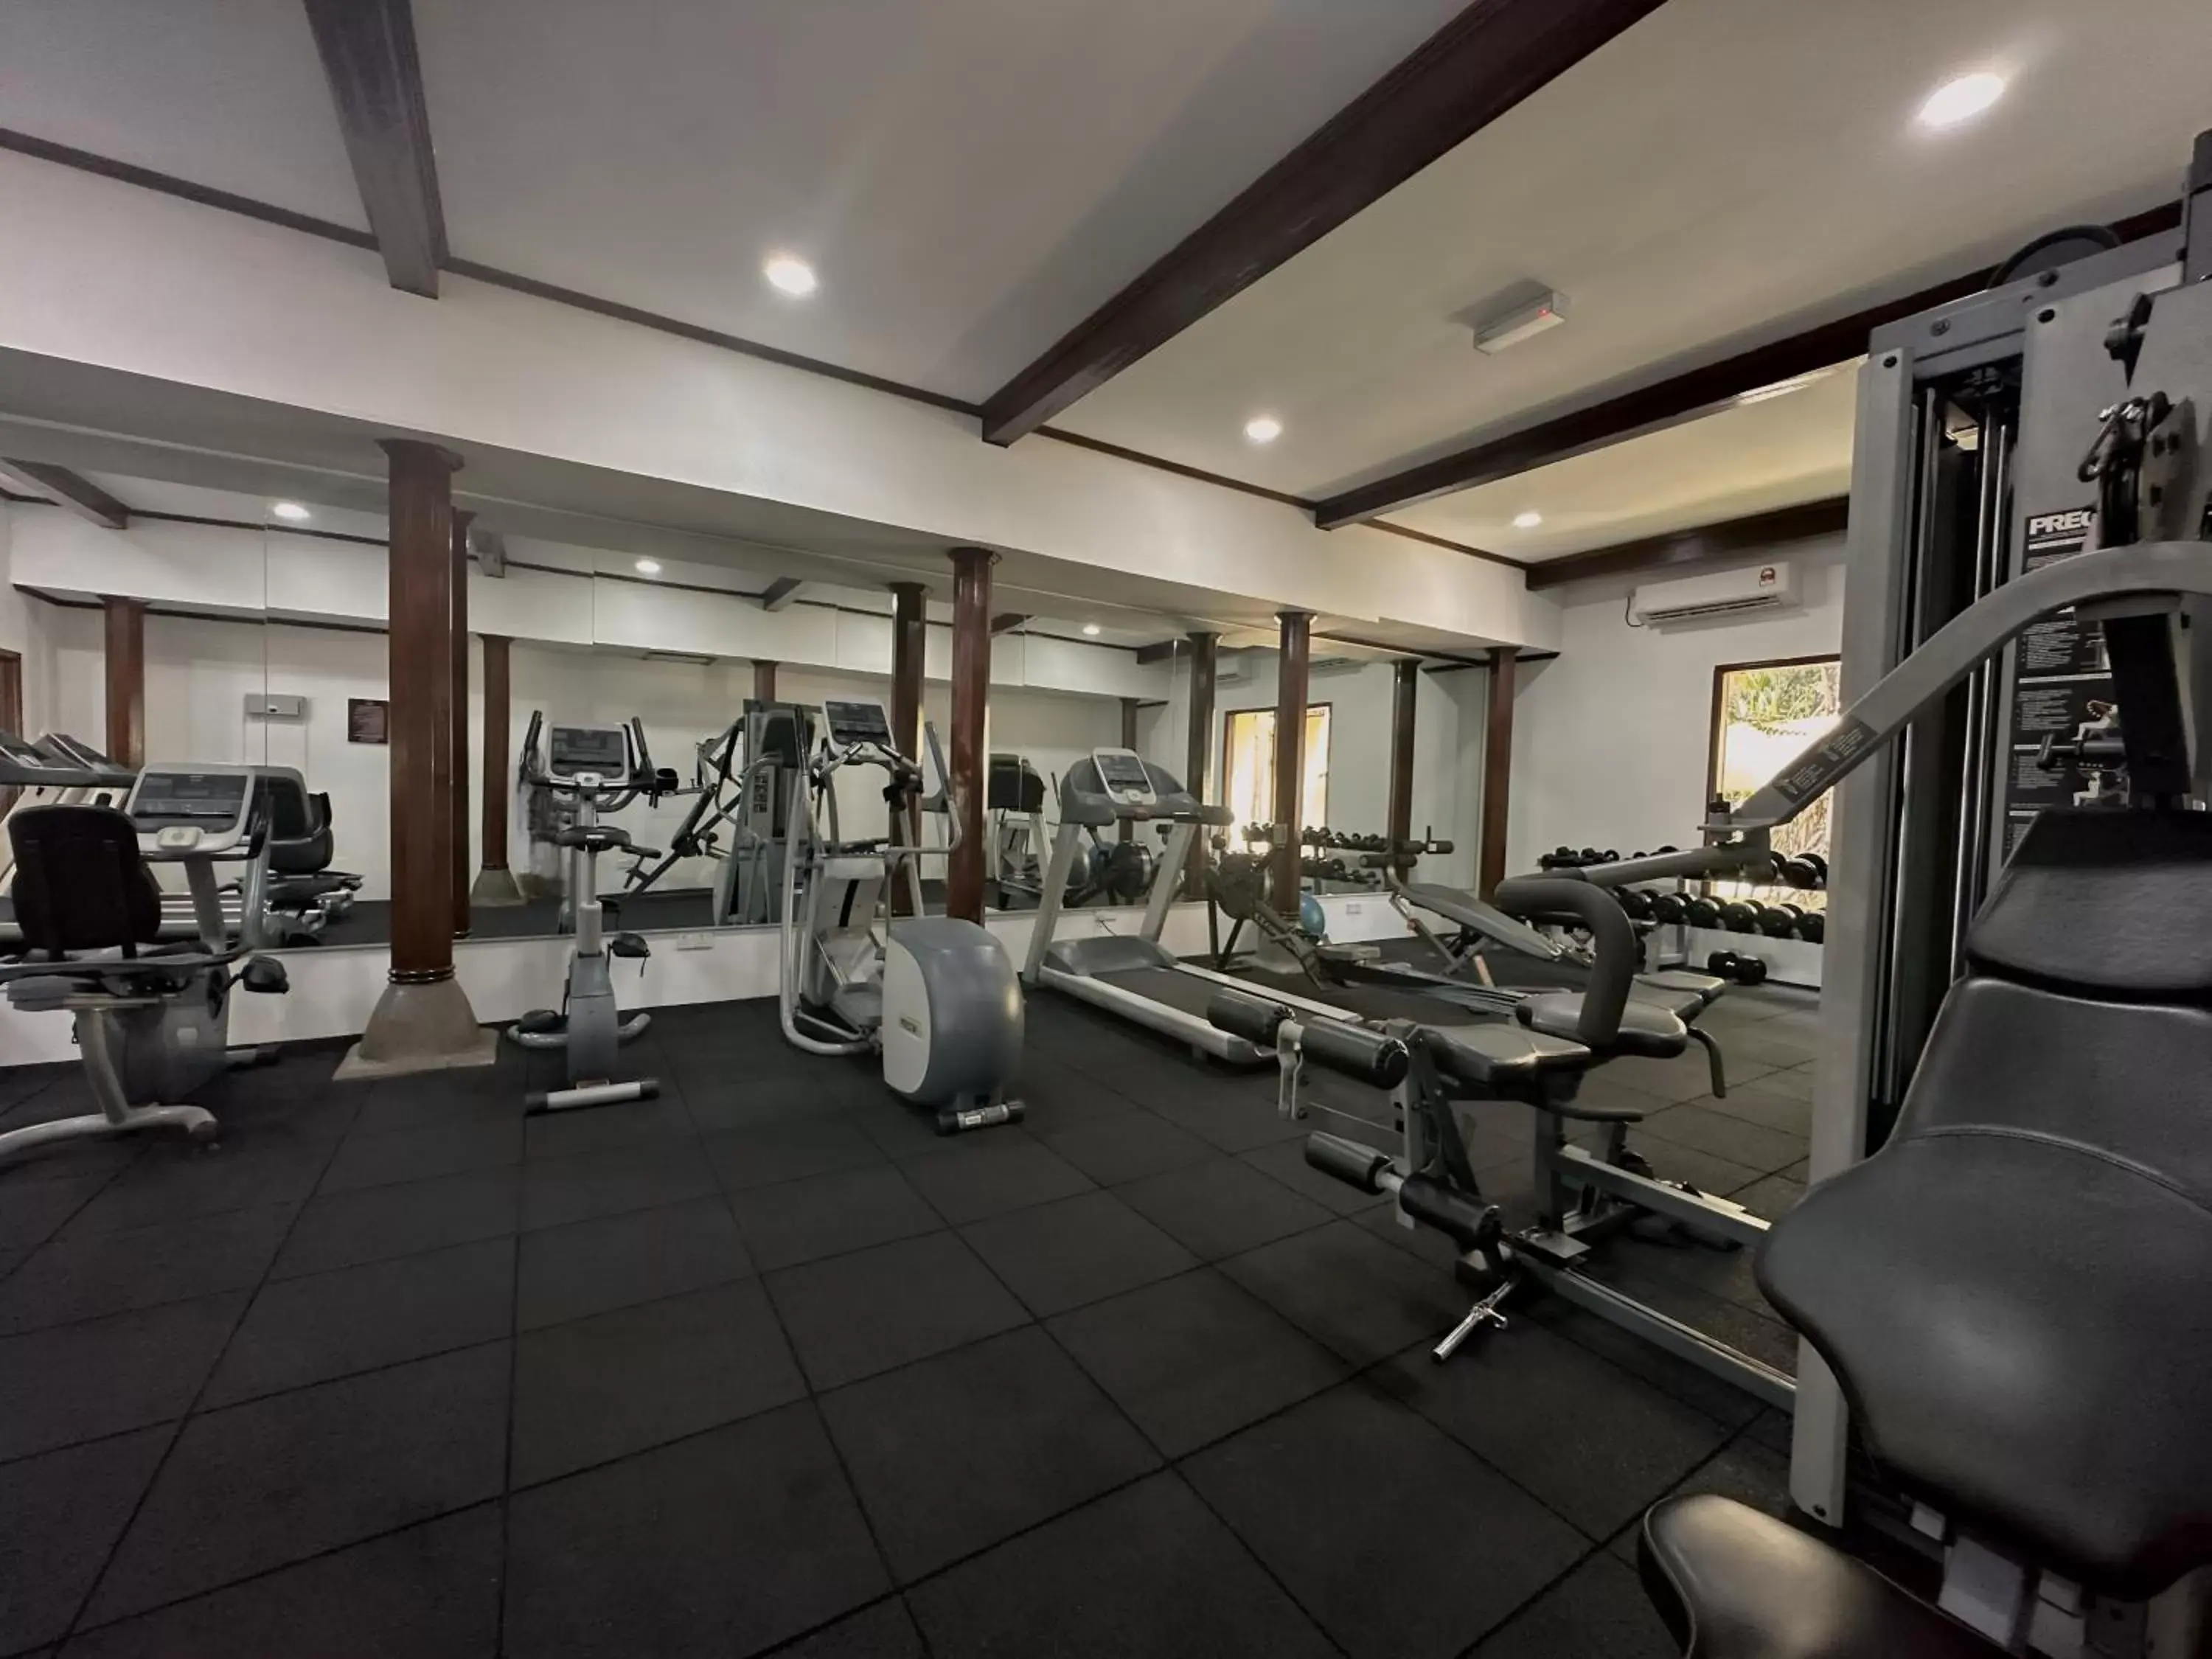 Fitness centre/facilities, Fitness Center/Facilities in Rebak Island Resort & Marina, Langkawi